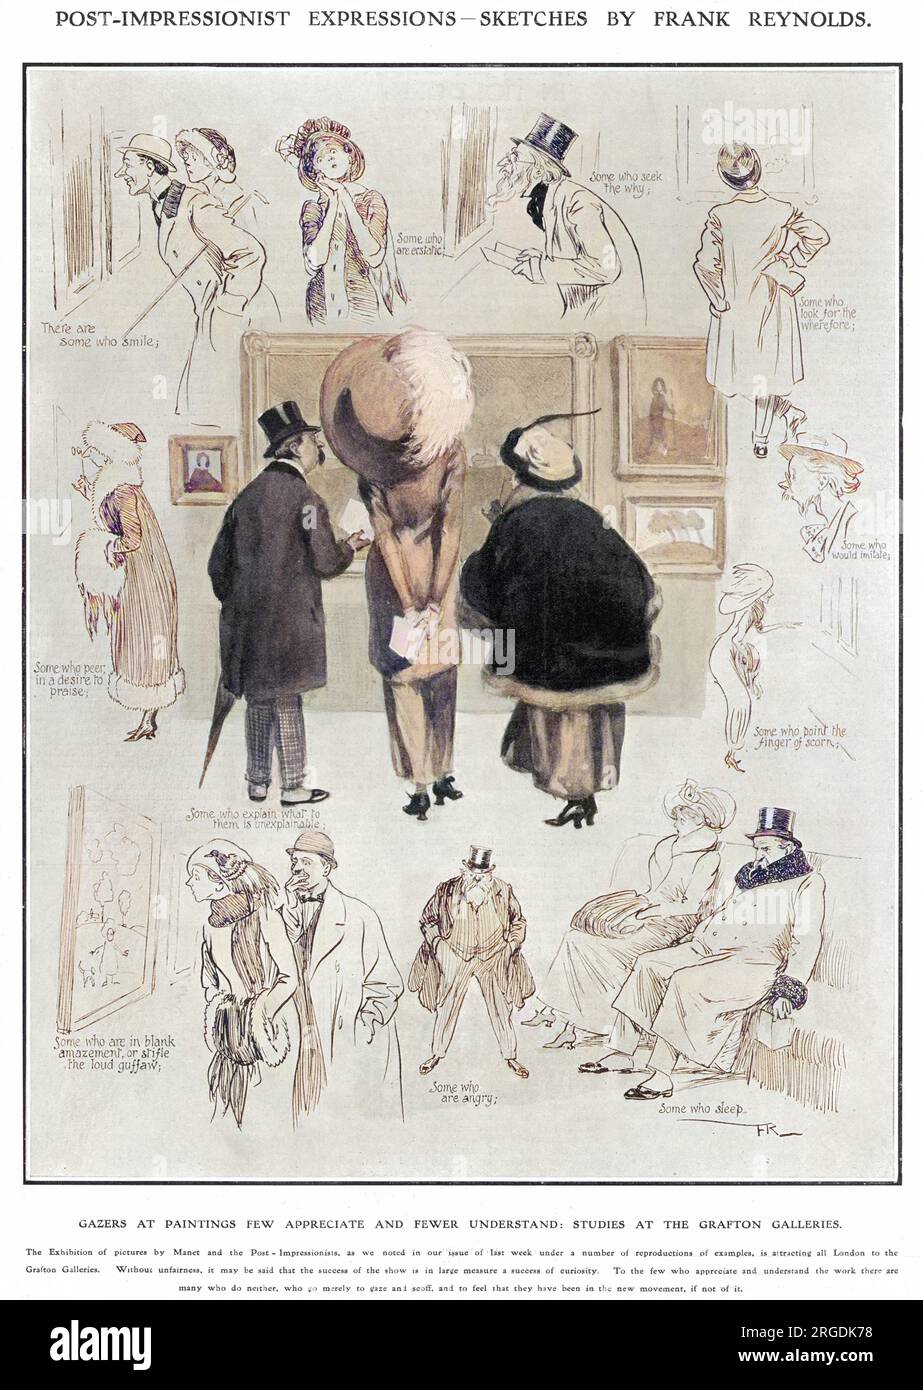 Die Betrachter von Gemälden, die nur wenige schätzen und weniger verstehen, sind Skizzen der „Manet and the Post-Impressionists Exhibition“ aus dem Jahr 1910-11 in den Grafton Galleries. Diese umstrittene Ausstellung führte die moderne Kunst in Großbritannien ein und wurde von Roger Fry organisiert und kuratiert Stockfoto